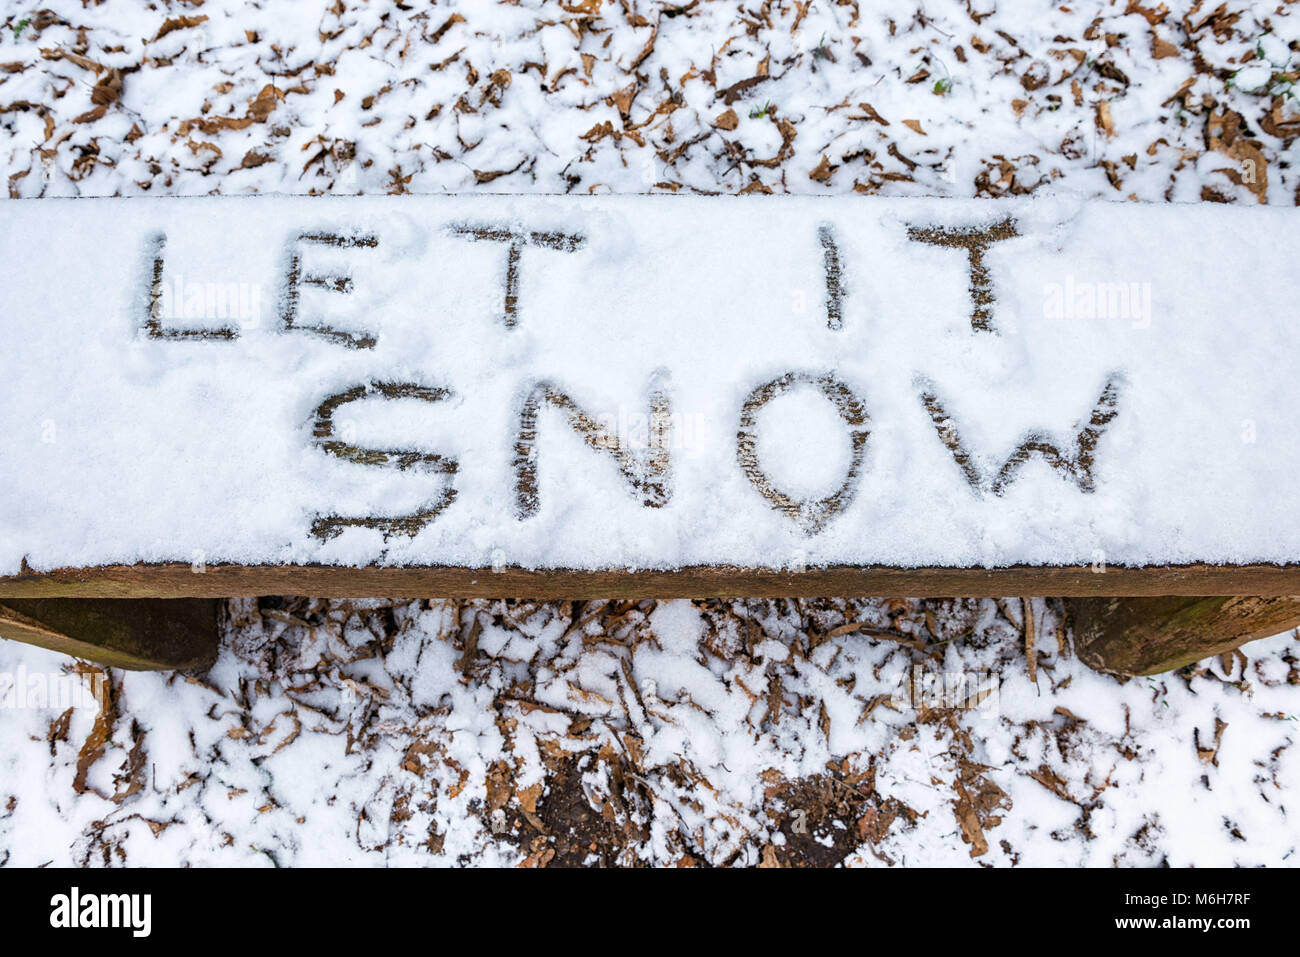 'Let it Snow' lyric/Navidad mensaje escrito en la nieve en un banco Foto de stock